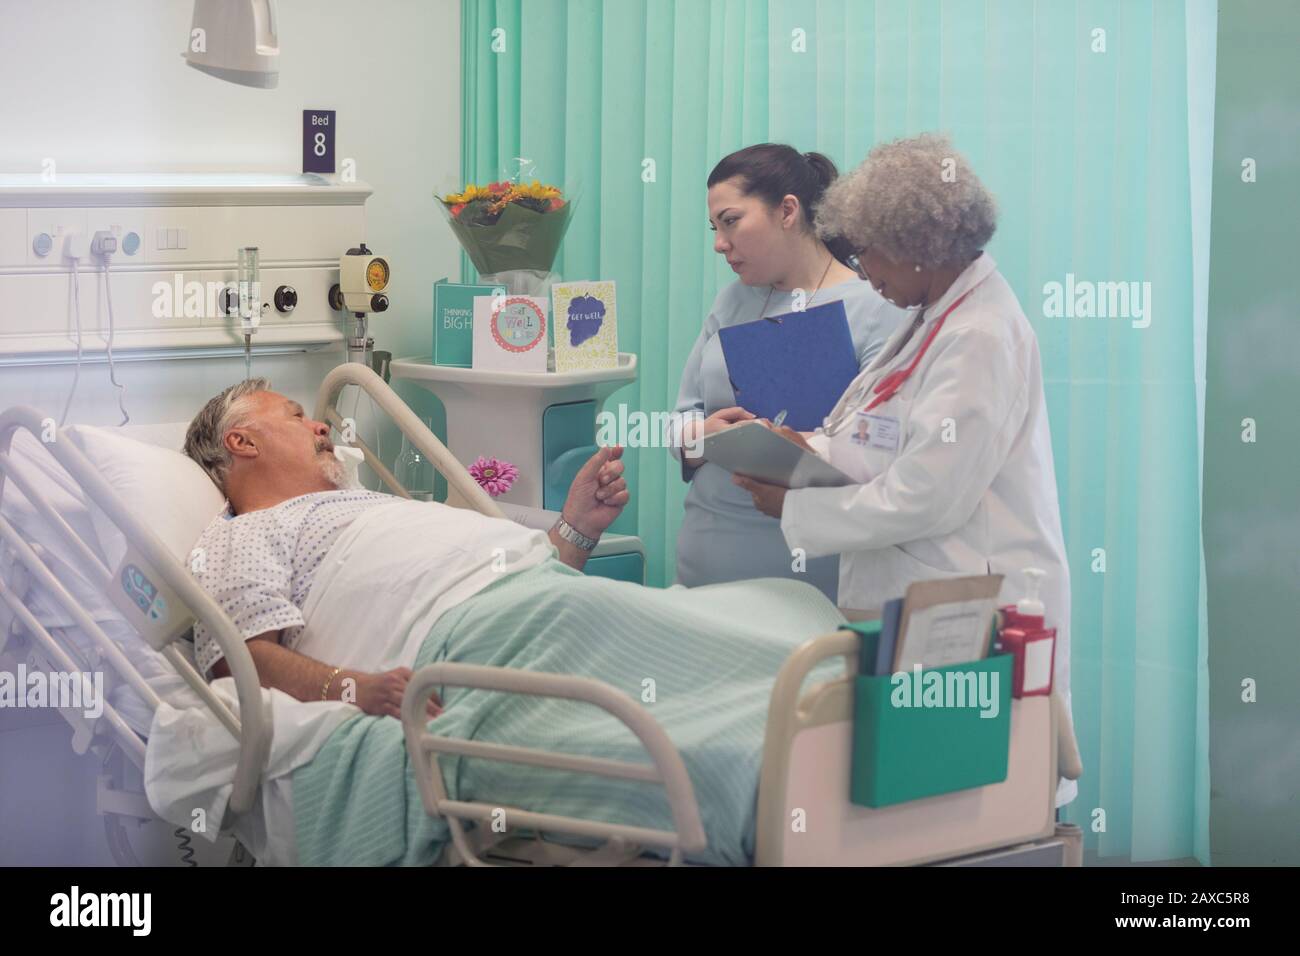 Médecins avec dossier médical effectuant des rondes, en parlant avec le patient senior dans la salle d'hôpital Banque D'Images